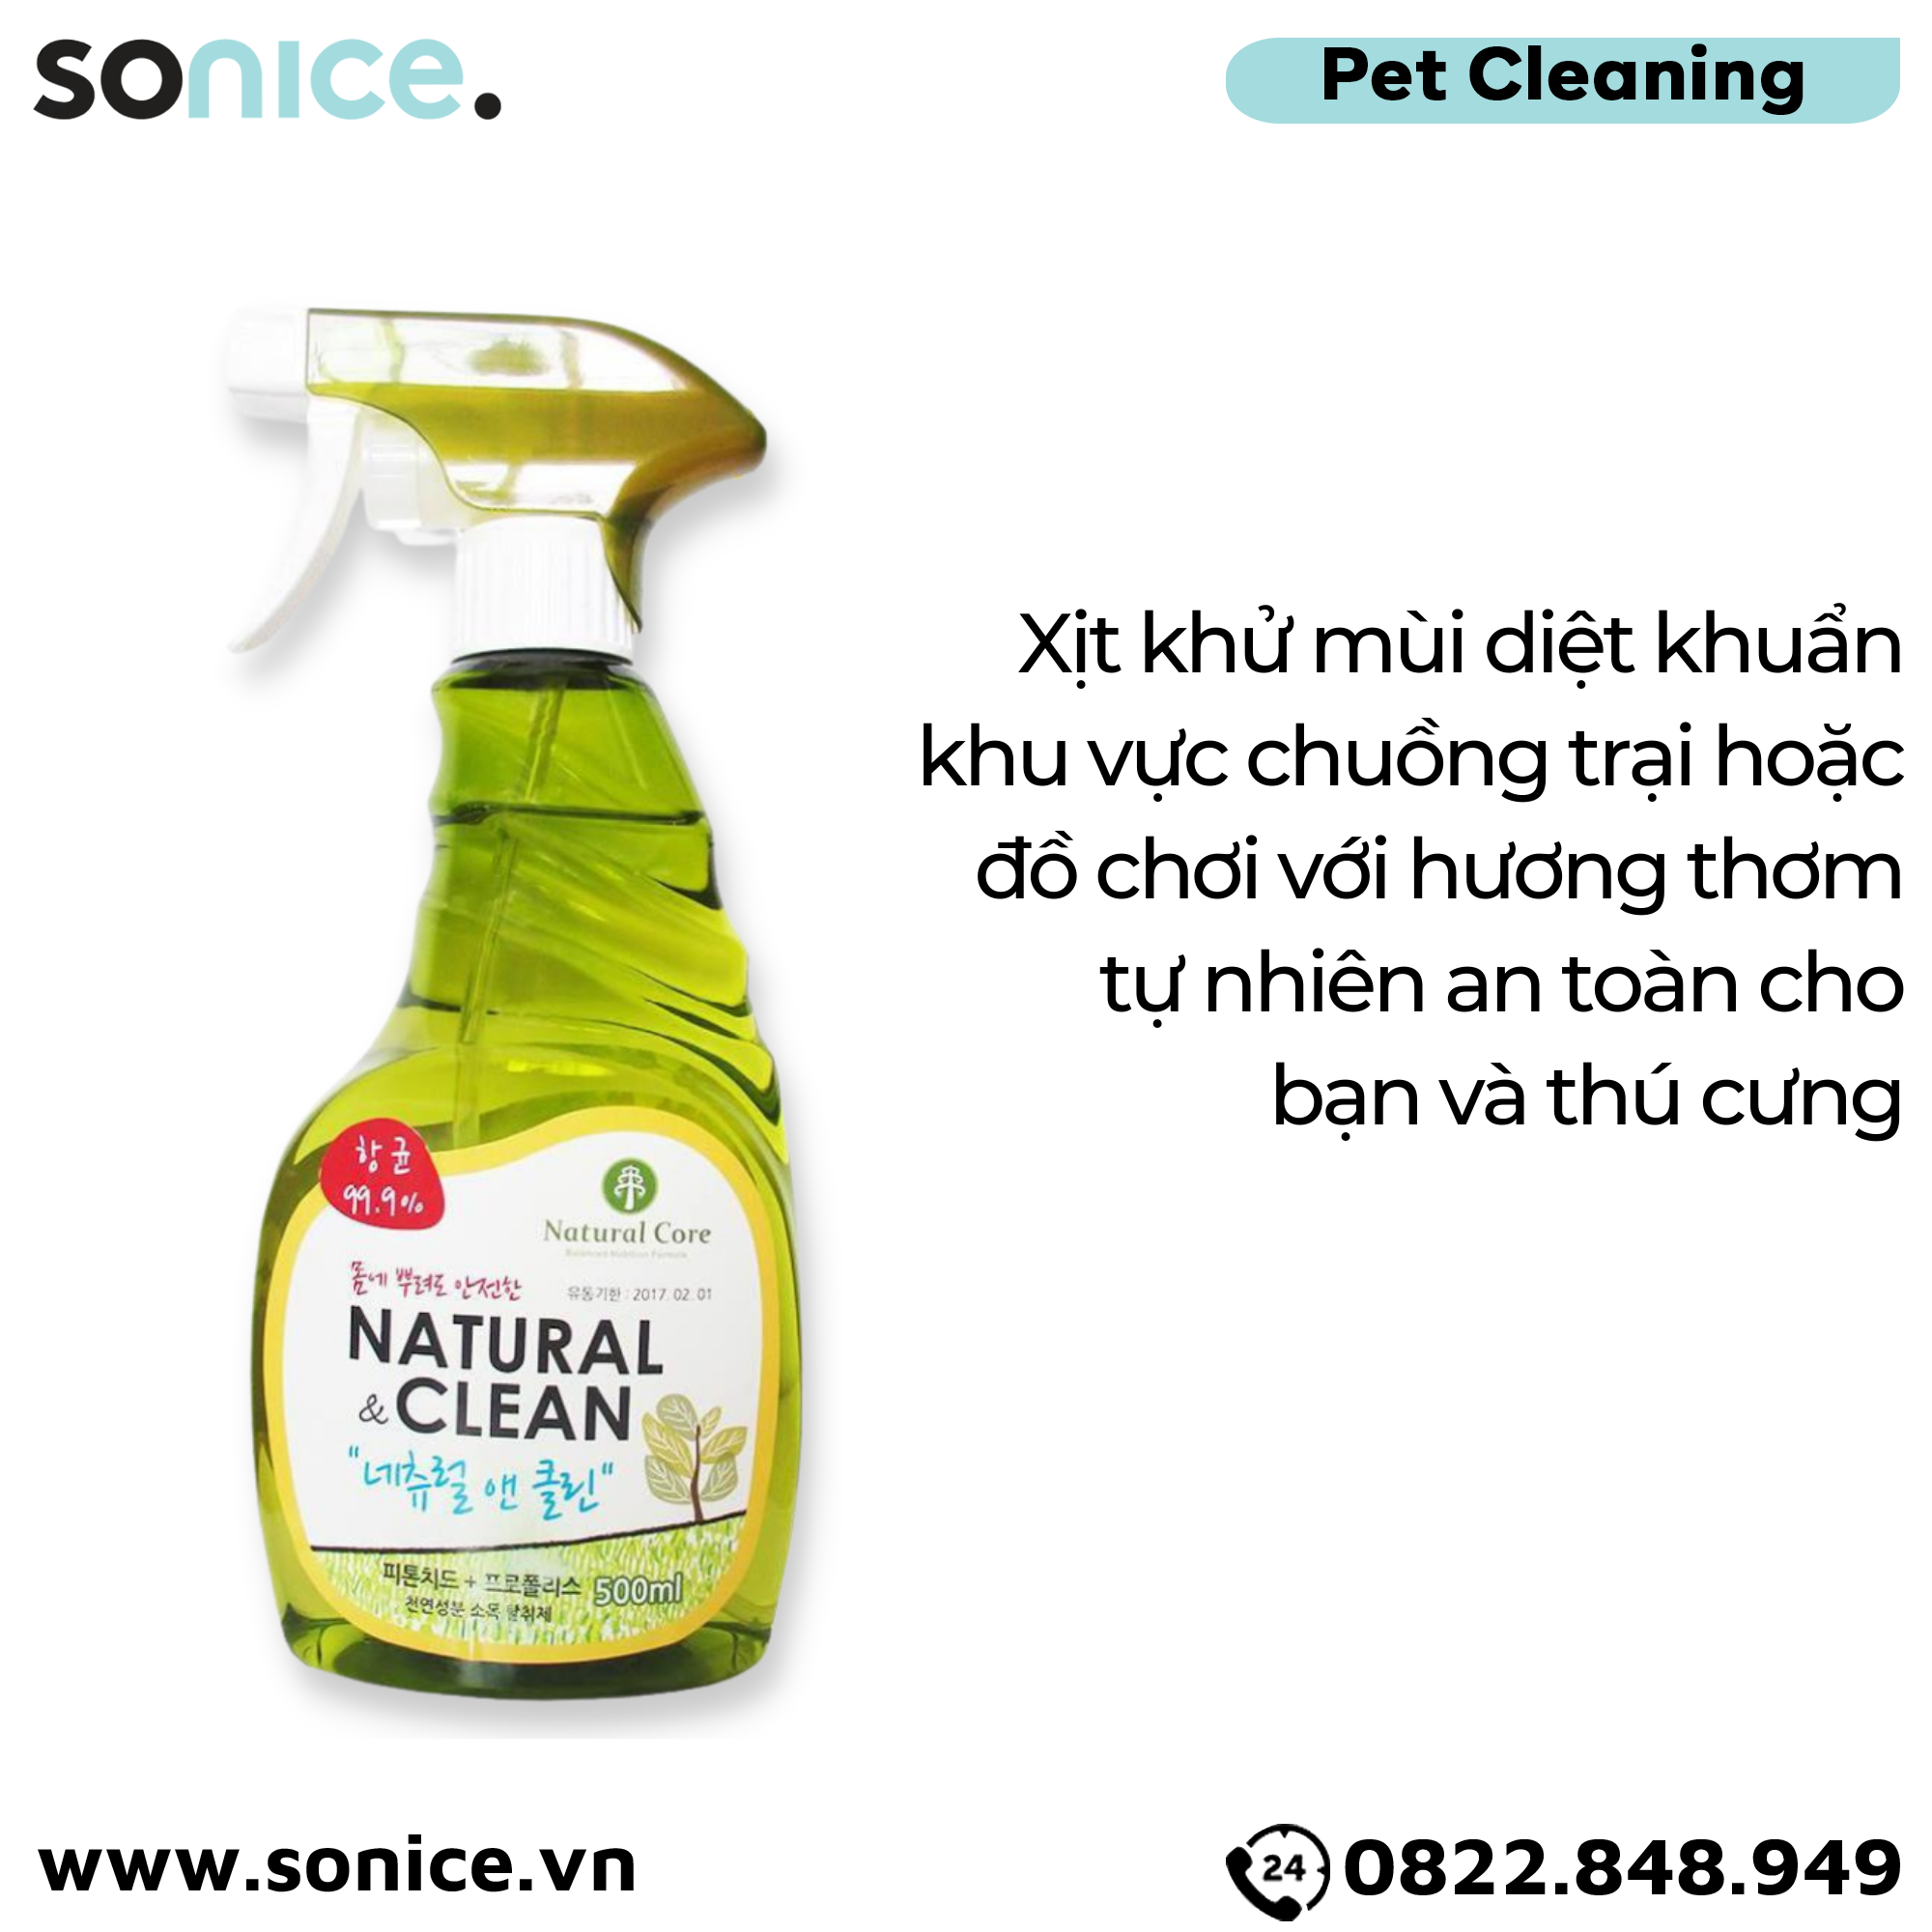  Xịt khử mùi diệt khuẩn Natural Clean 500ml SONICE. 